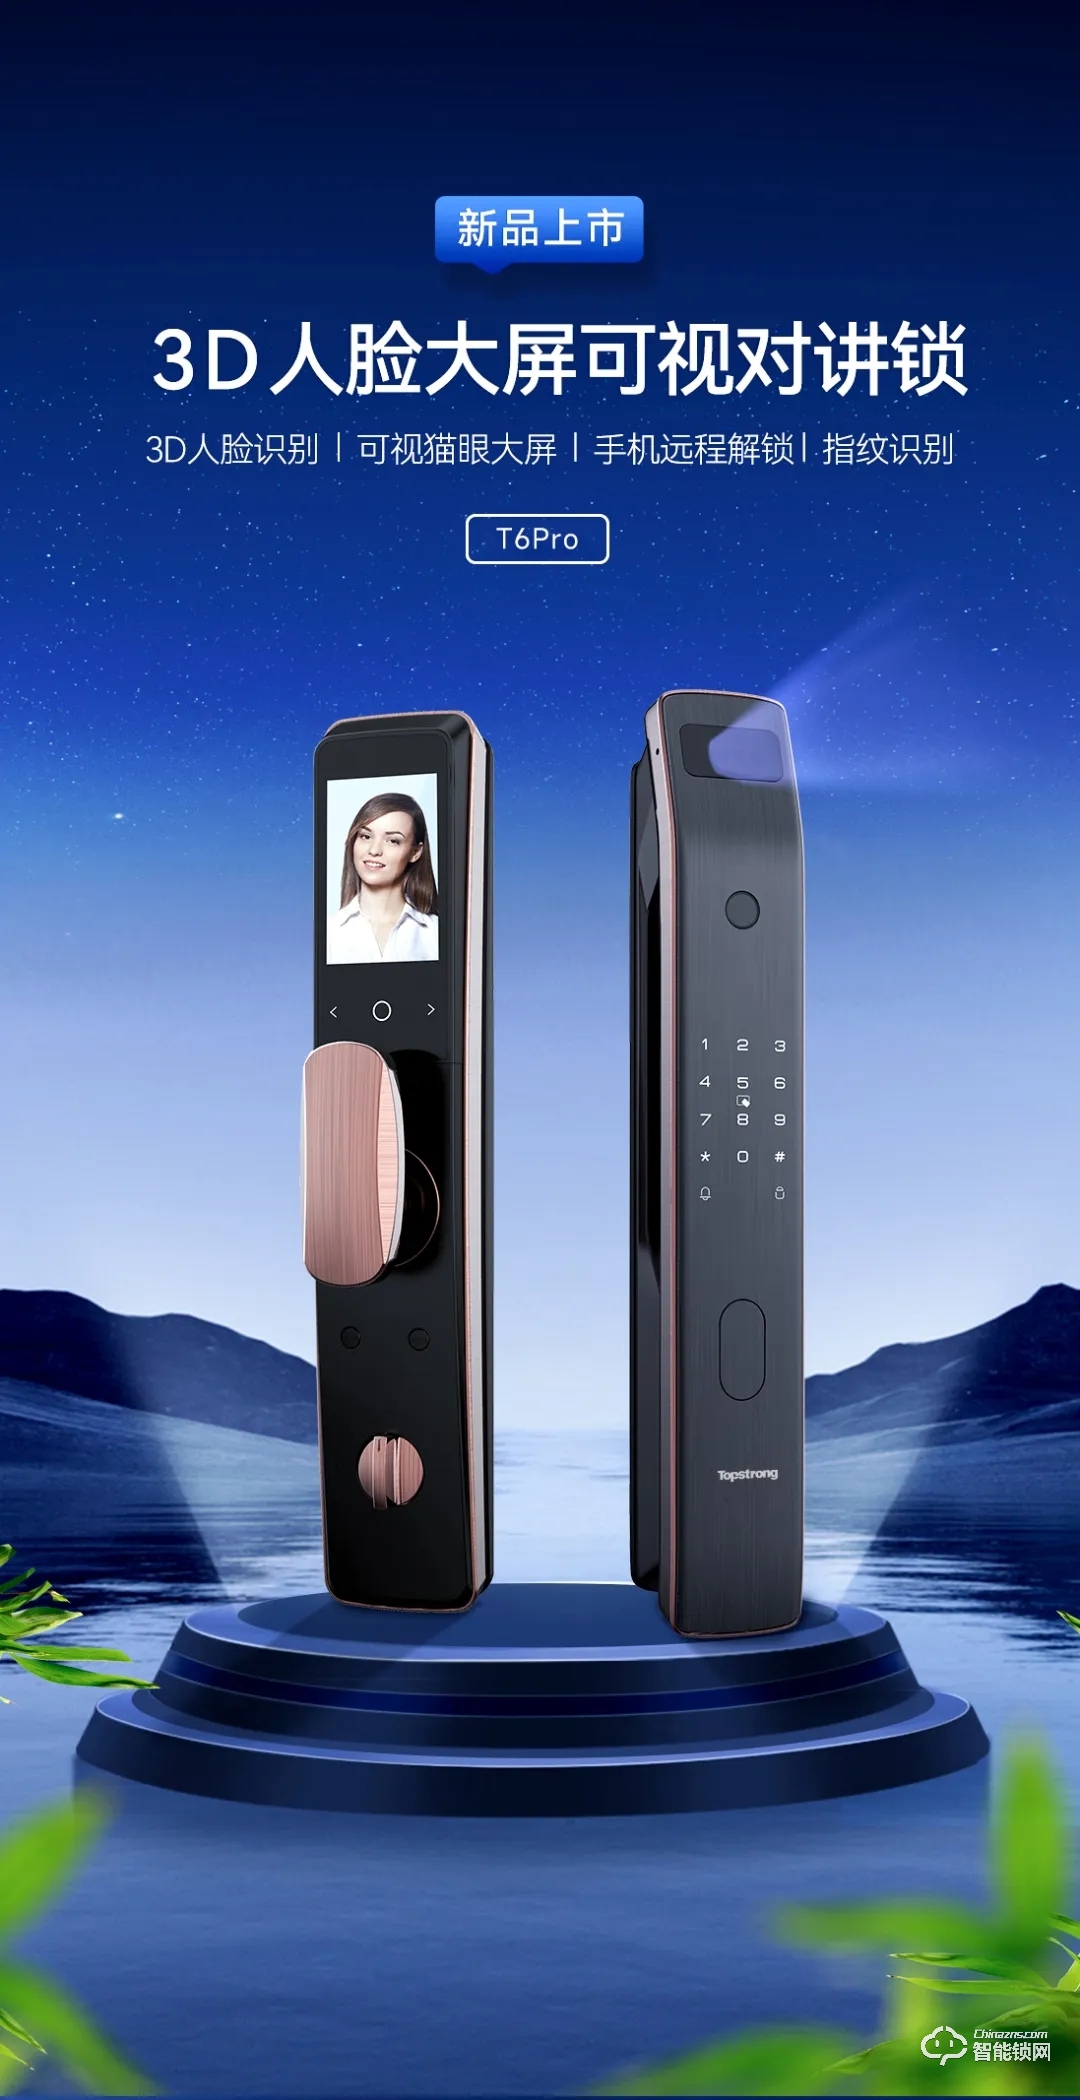 新品上市 | 顶固新品T6Pro 3D人脸识别智能锁，震撼亮相，满配来袭！